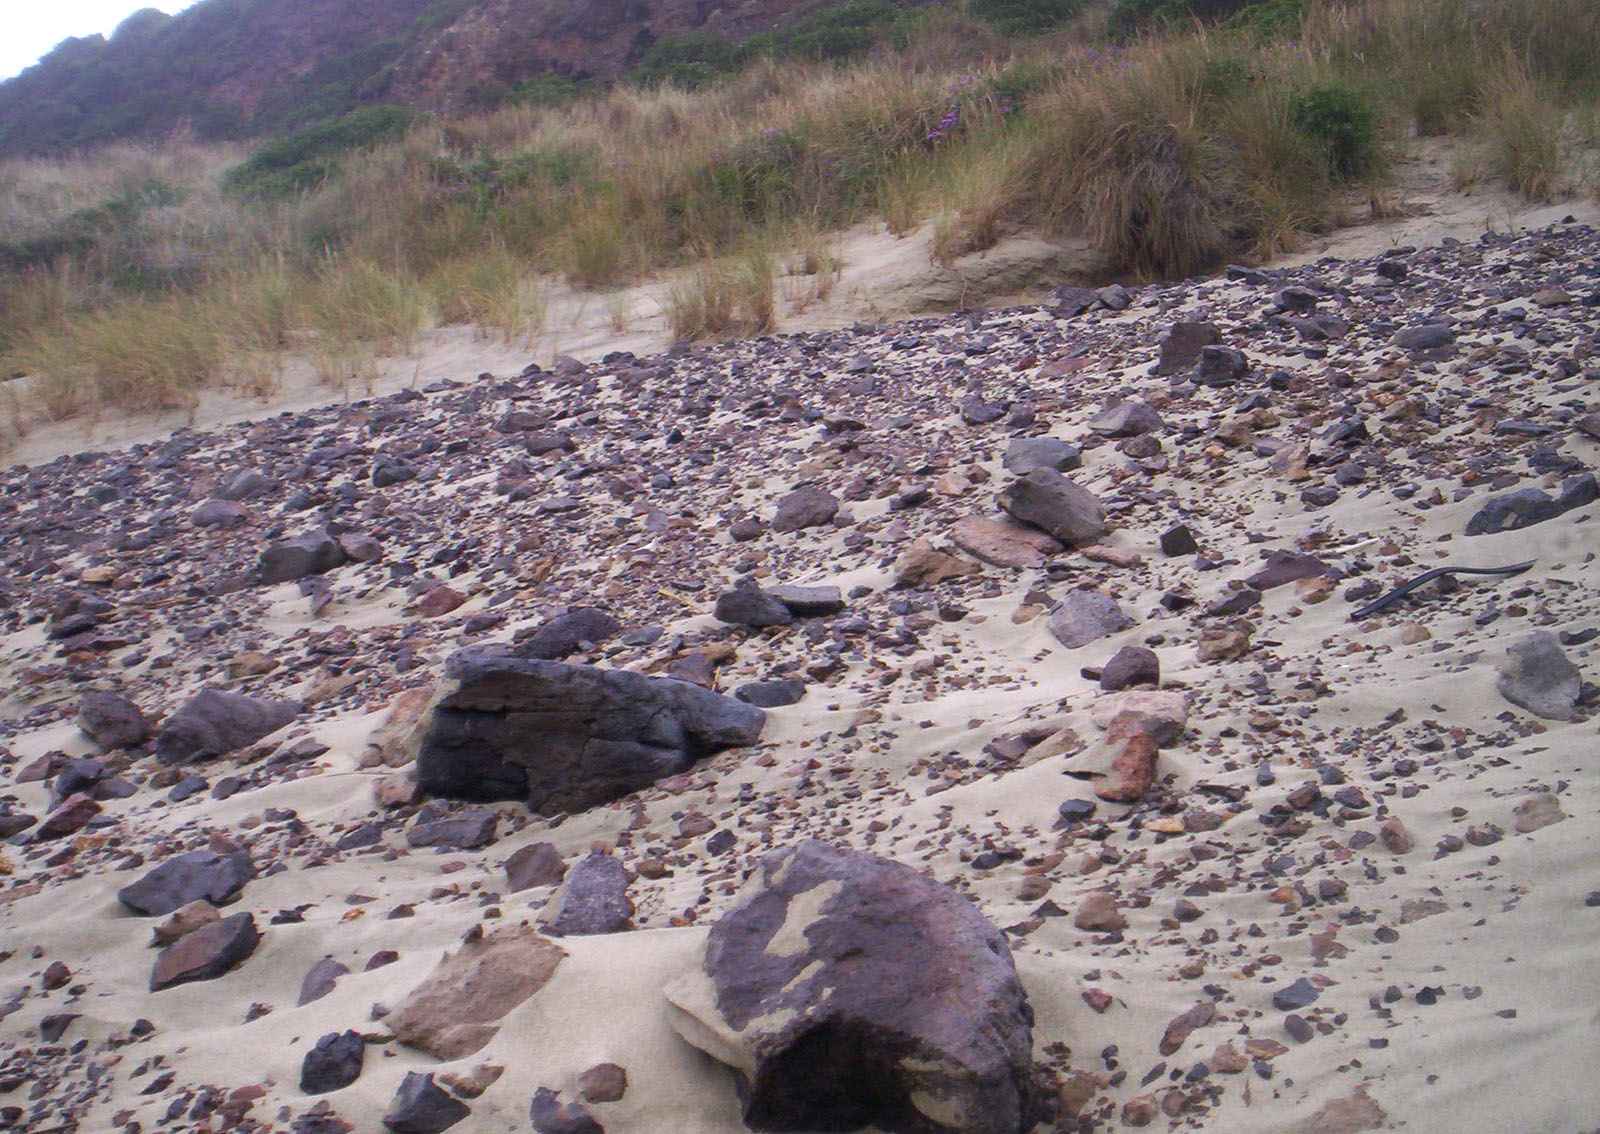 Rocks and Scoria, Beach, Bspo06, Descent, Erosion, HQ Photo